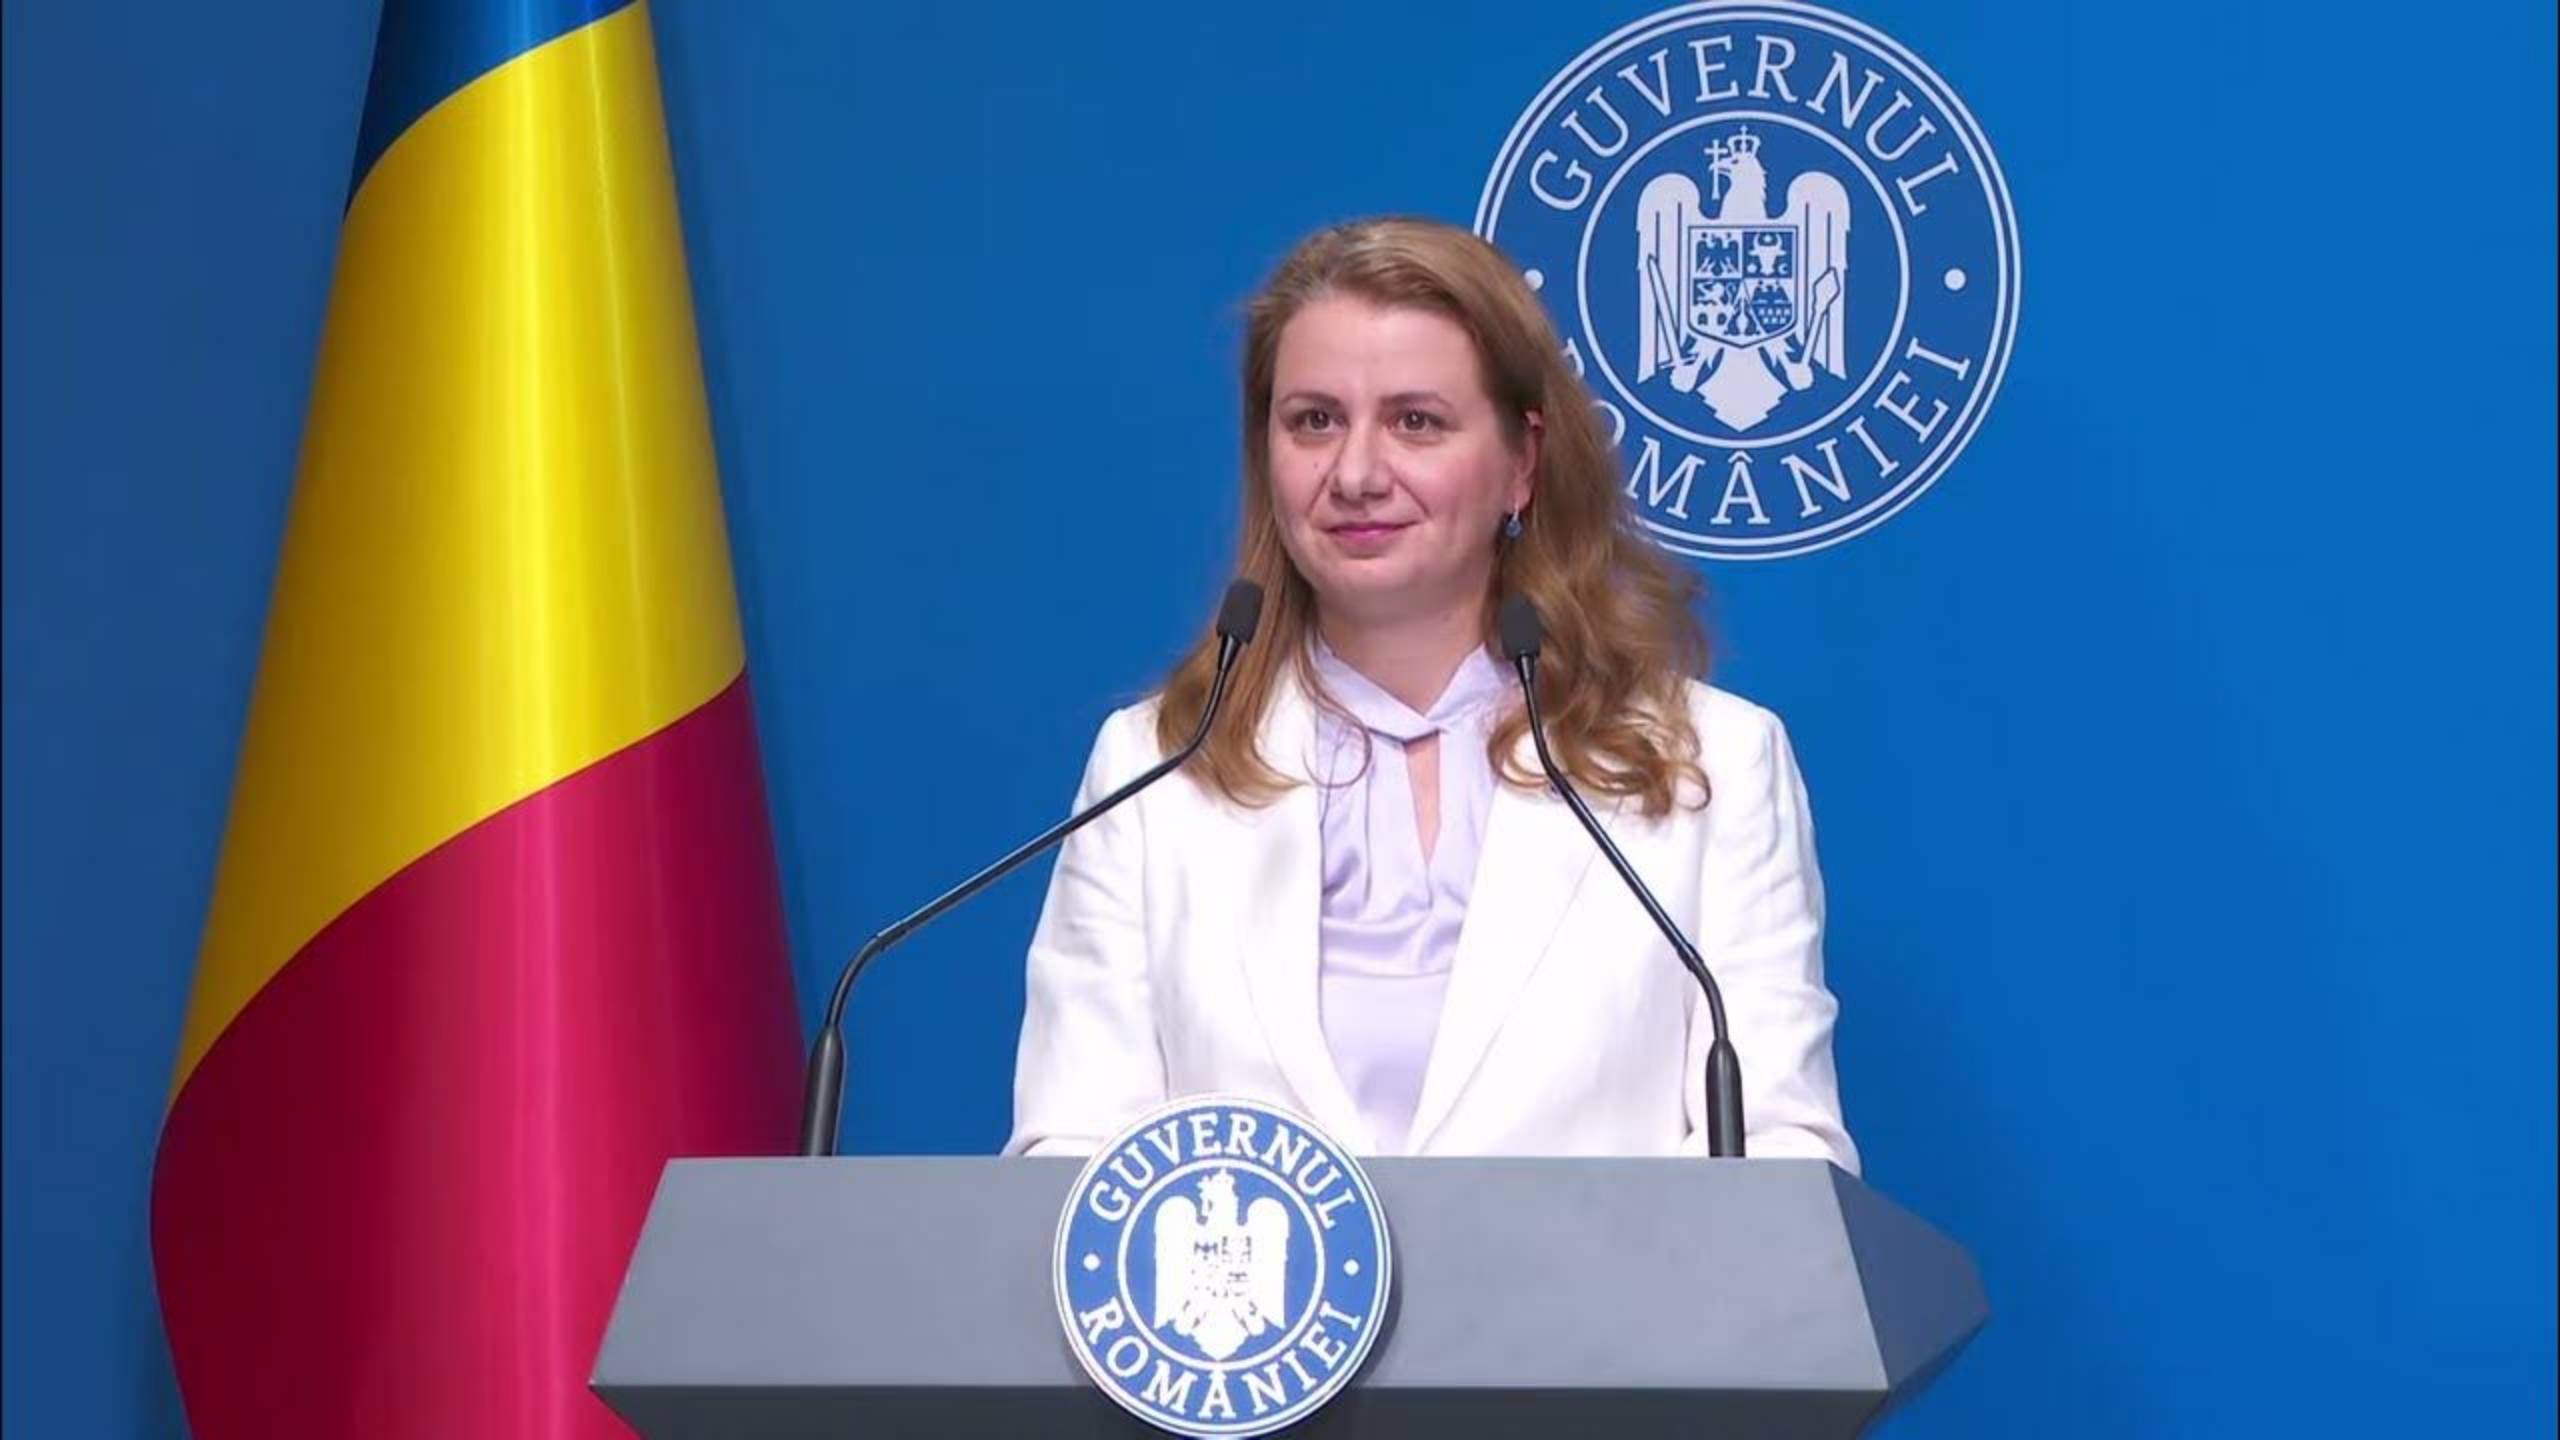 Opetusministeri 2 Viralliset ilmoitukset VIIMEINEN HETKI Tärkeä lainsäädäntö Romania